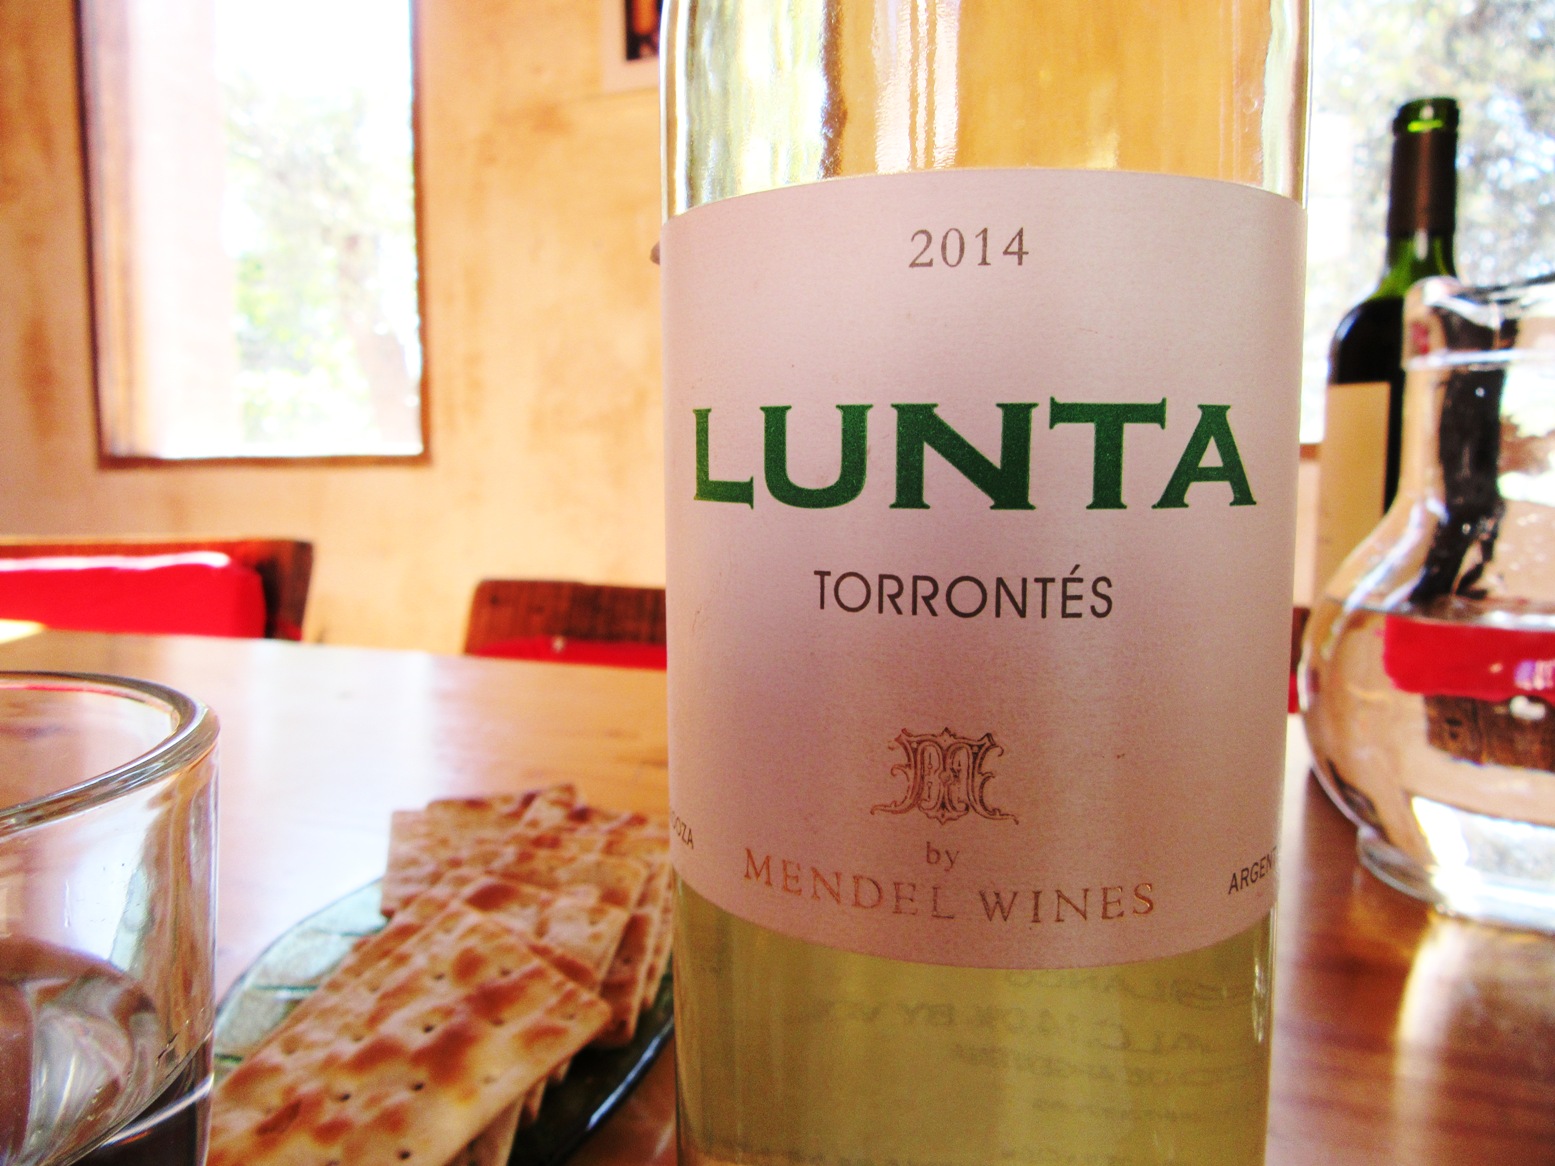 Mendel Wines, Lunta Torrontés 2014, Cafayate, Salta, Argentina, Wine Casual